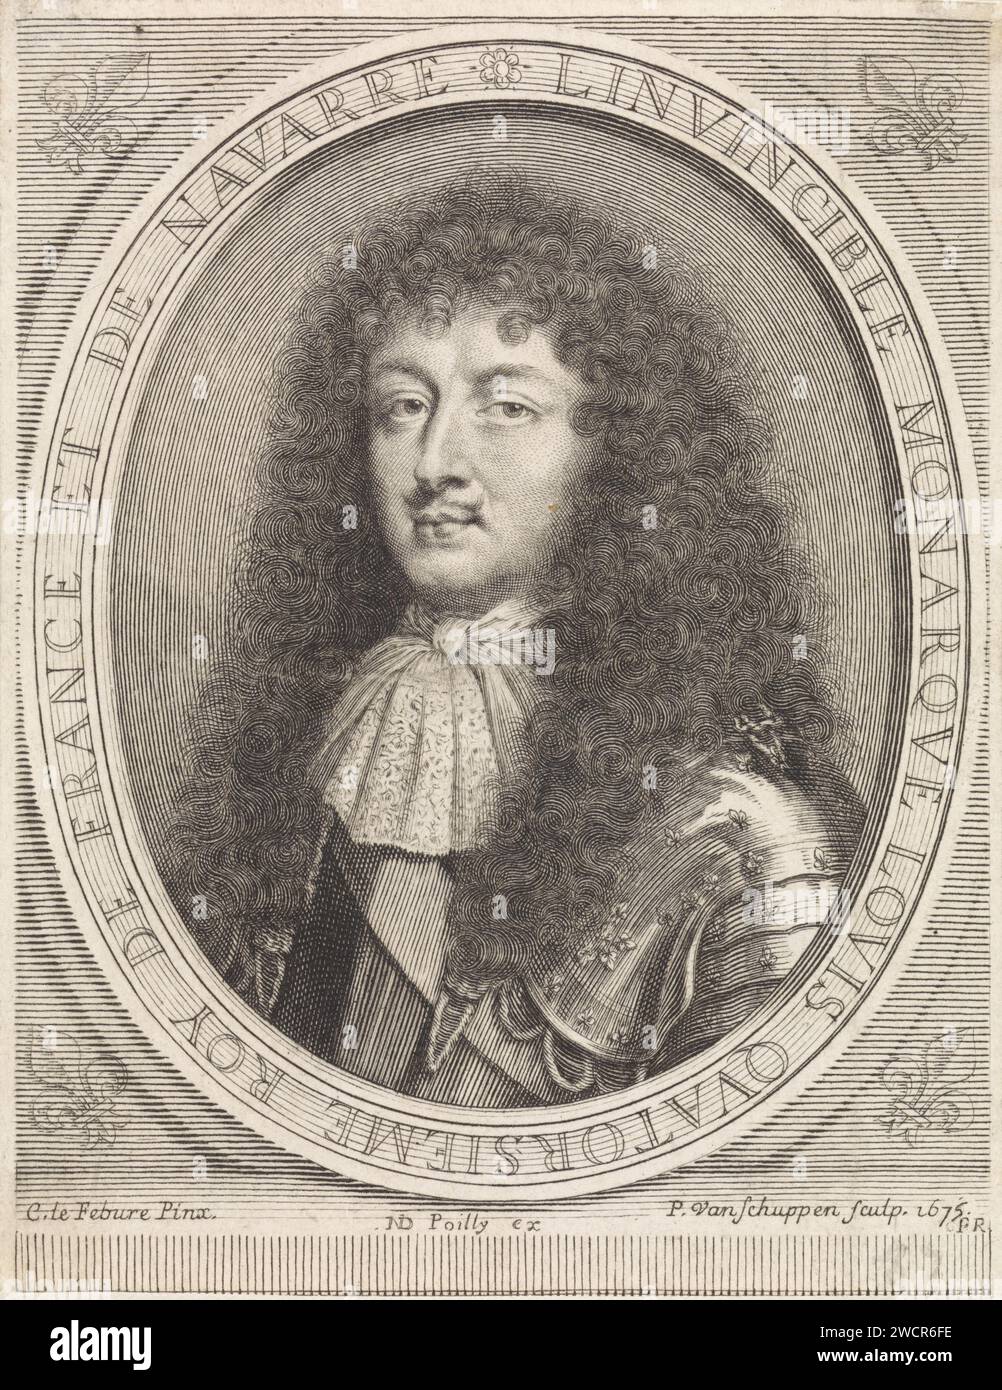 Portrait de Louis XIV, roi de France, avec encolure en dentelle nouée, Pieter van Schuppen, d'après Claude Lefèbvre, 1675 estampe Paris gravure sur papier / gravure Banque D'Images